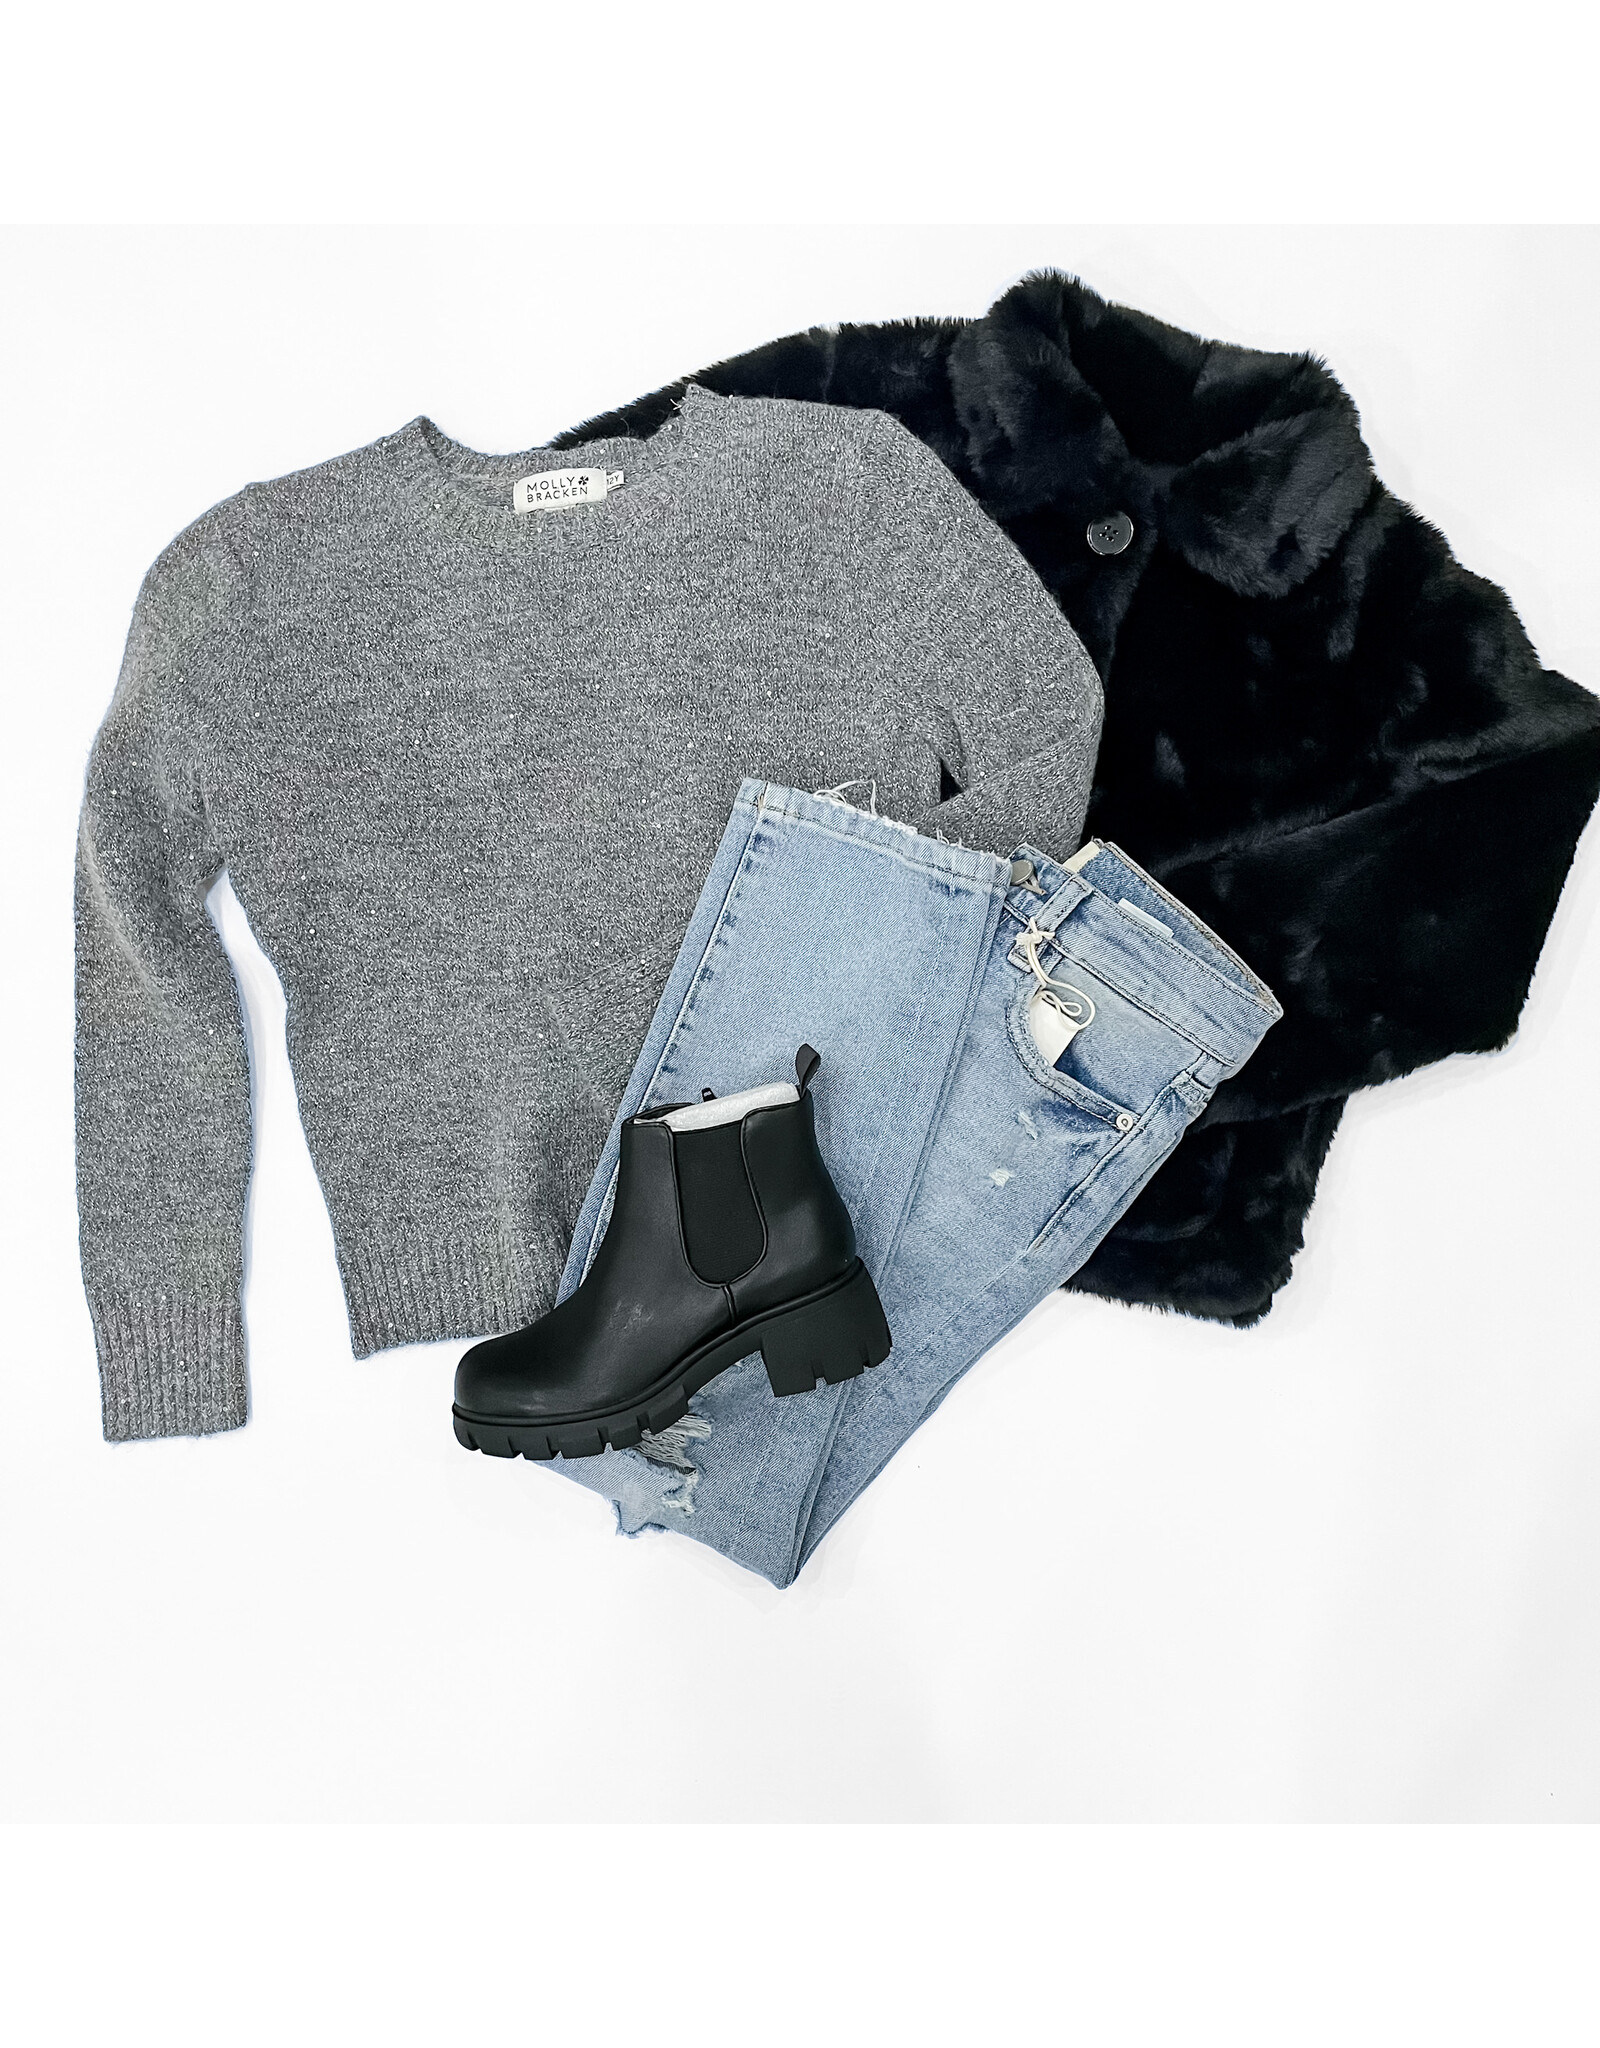 Tween Ash Grey Iridescent Sweater